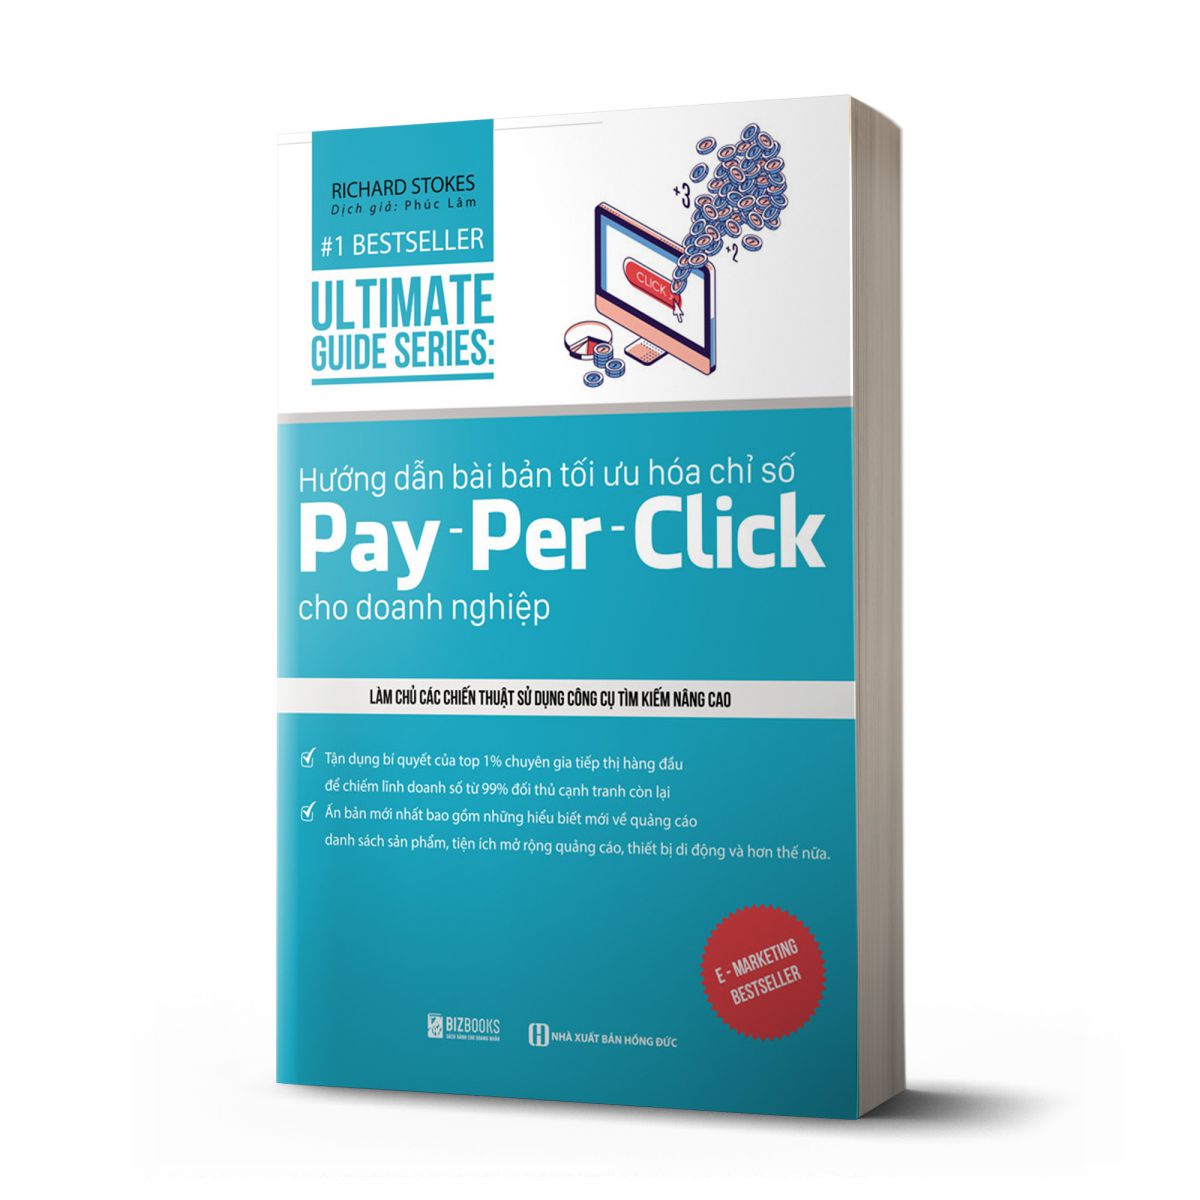 UltimateGuide Series: Hướng dẫn bài bản tối ưu hóa chỉ số Pay - per – Click cho doanh nghiệp